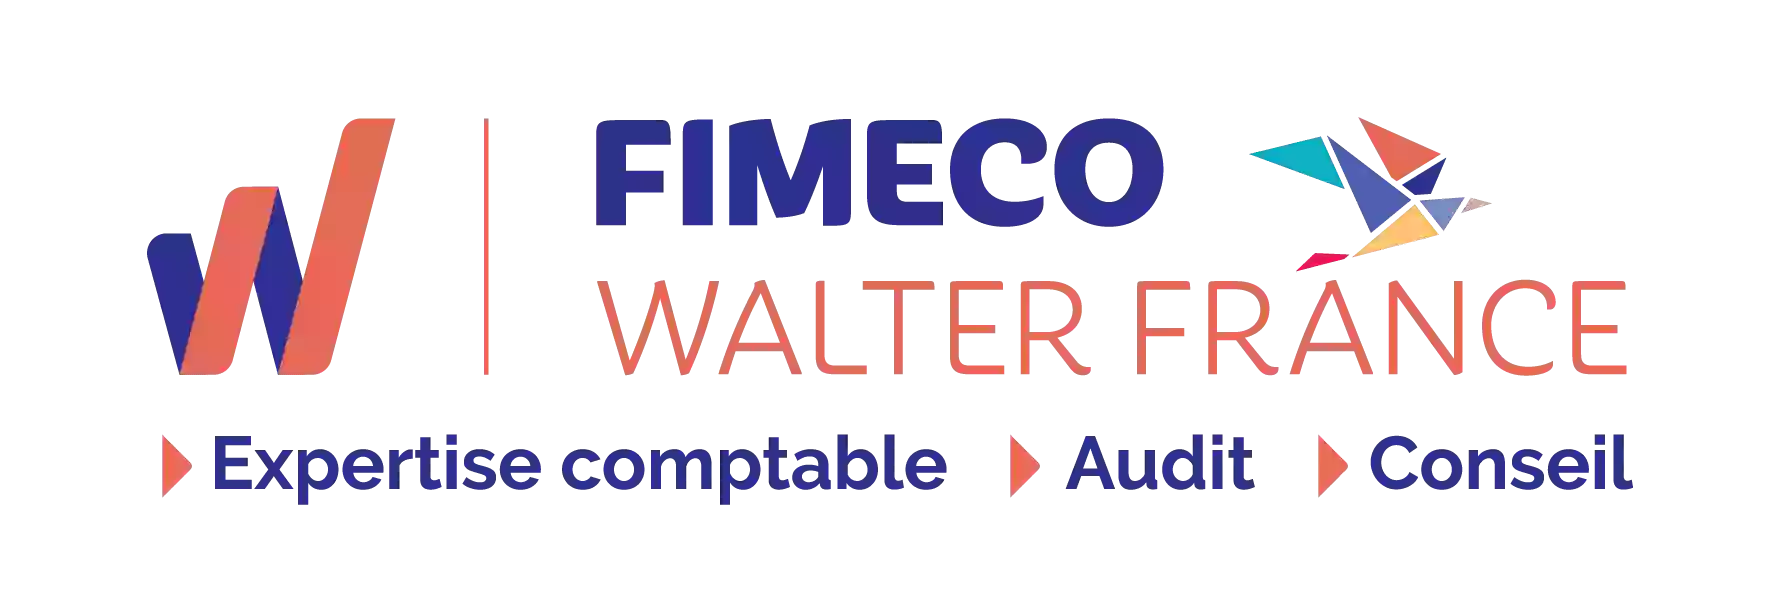 FIMECO Médis Walter France COMPTABLE - CABINET EXPERT COMPTABLE - COMMISSAIRES AUX COMPTES- Royan, Saint Palais sur Mer